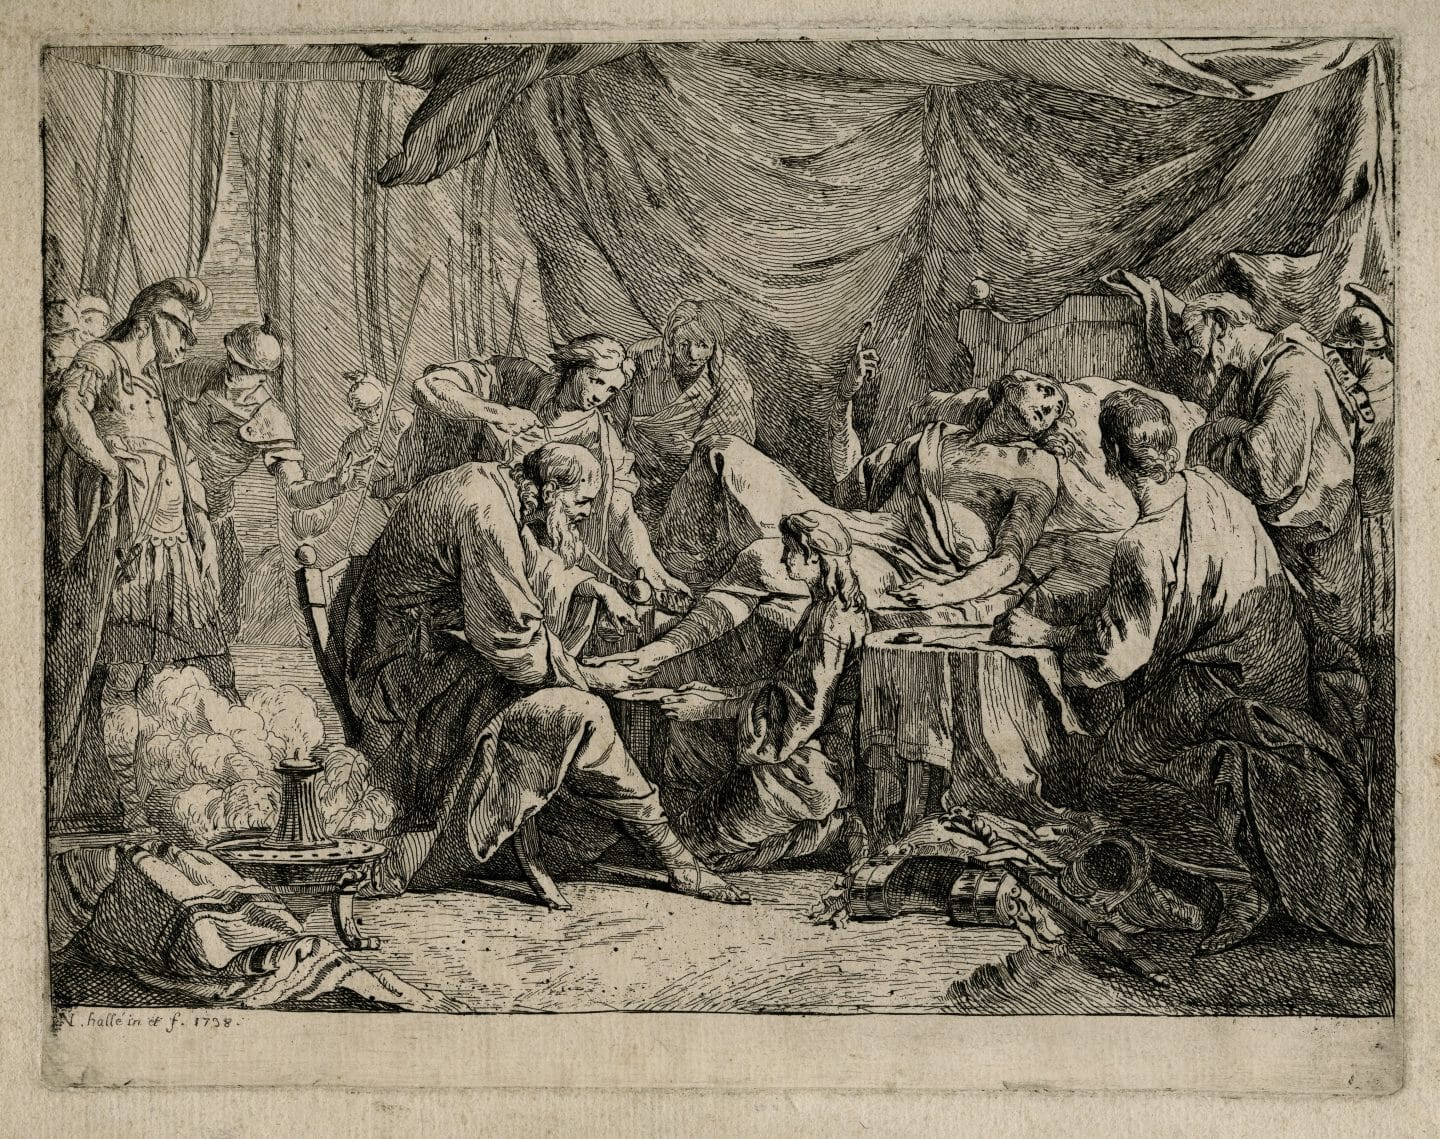 Noël Hallé, Antiochus dictant ses dernières volontés, 1738, etching. Agnes Etherington Art Centre, Queen’s University. Purchase, W. McAllister Johnson Fund, 1992, (35-014.02)